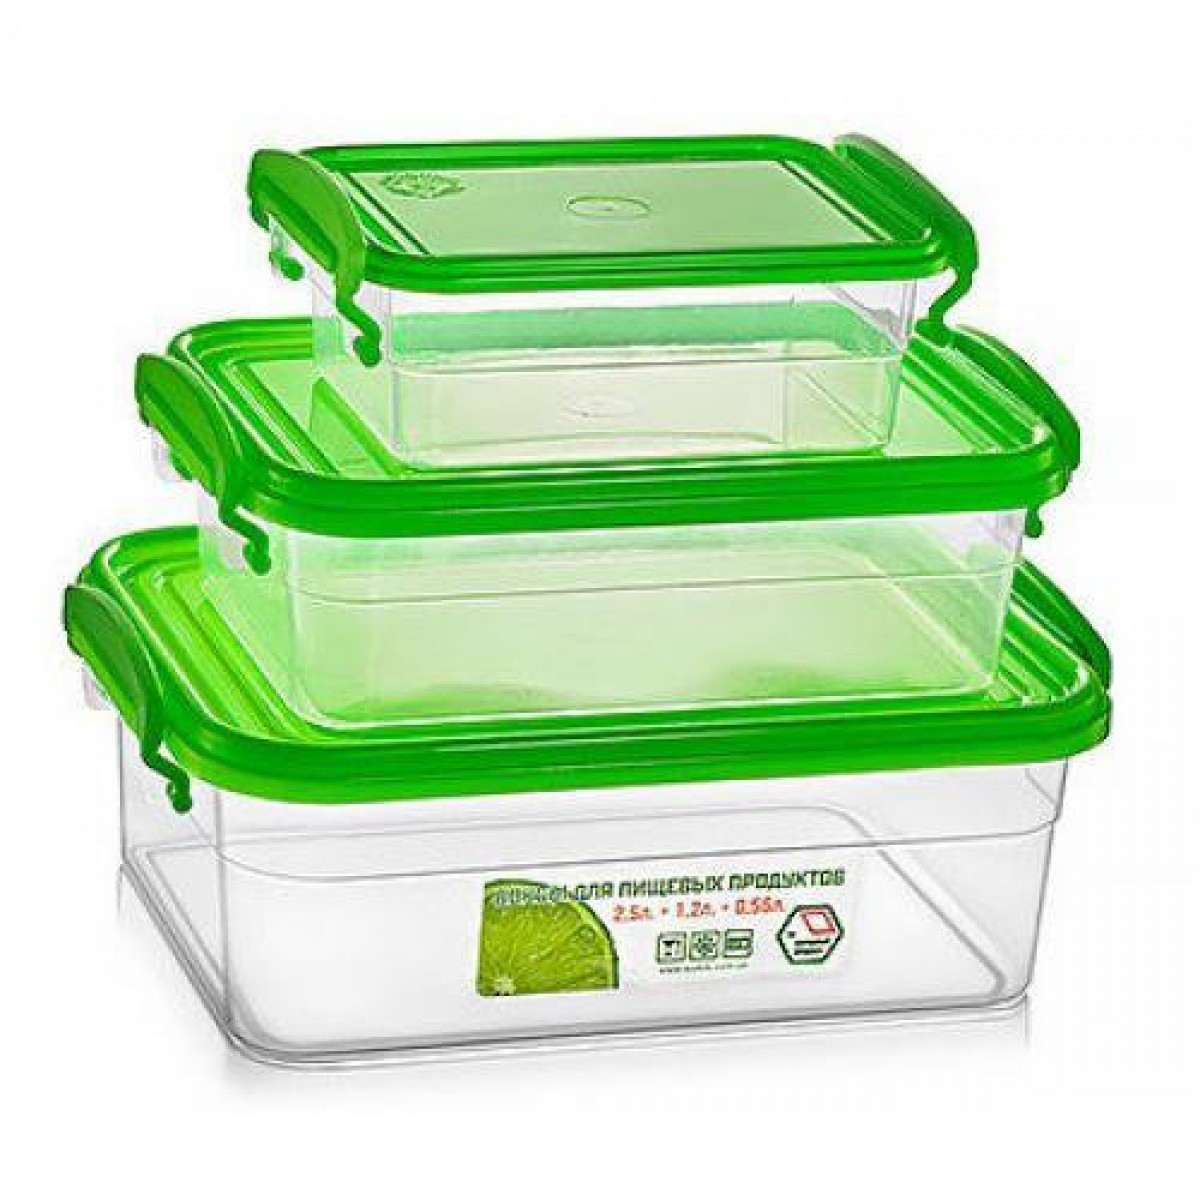 Судки пластиковые (набор контейнеров) для еды пищевой судочек 3шт .